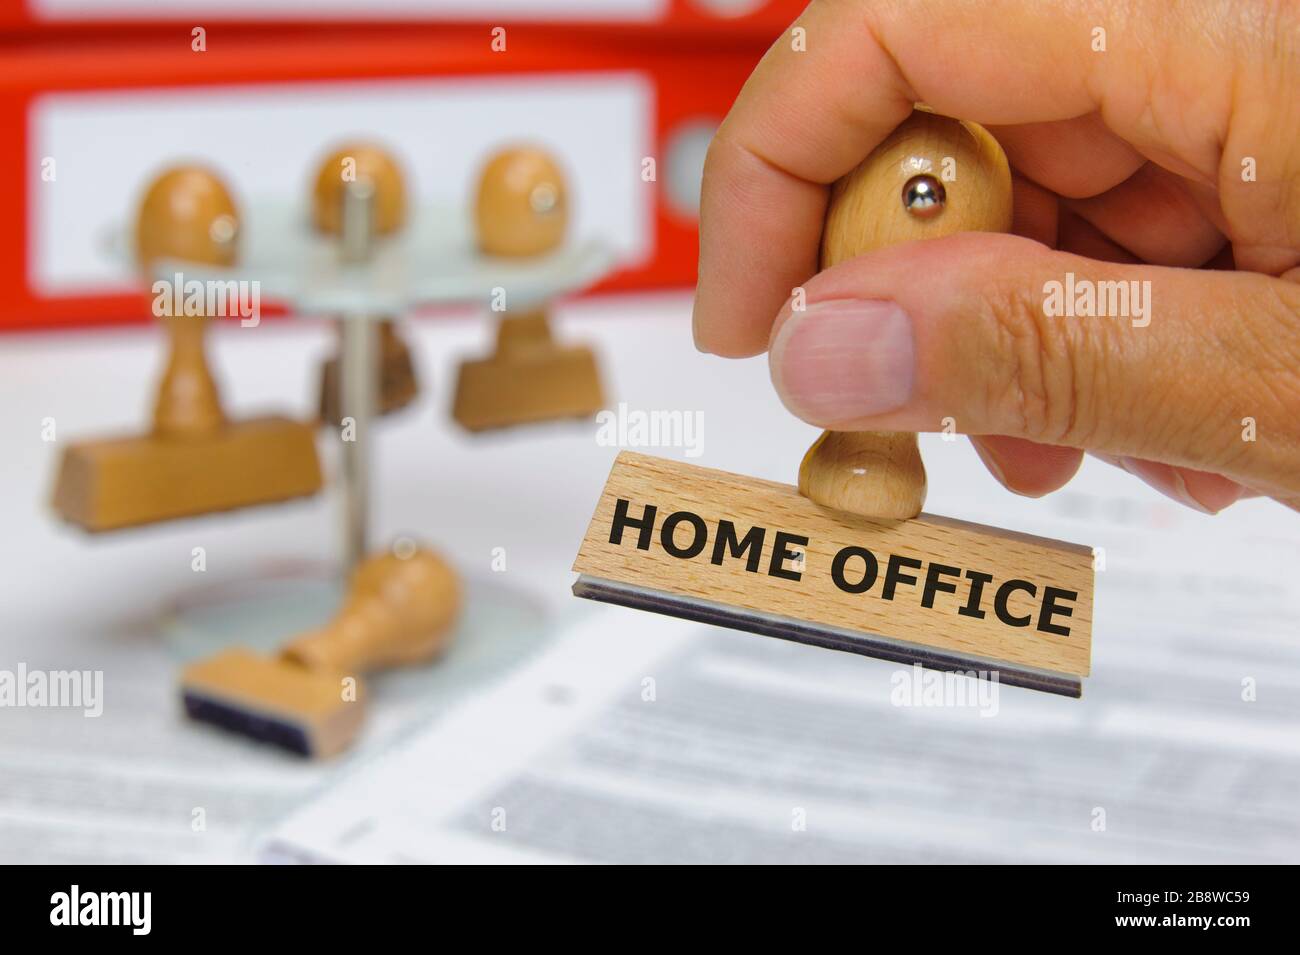 home office steht auf einem Holzstempel im Büro Stock Photo